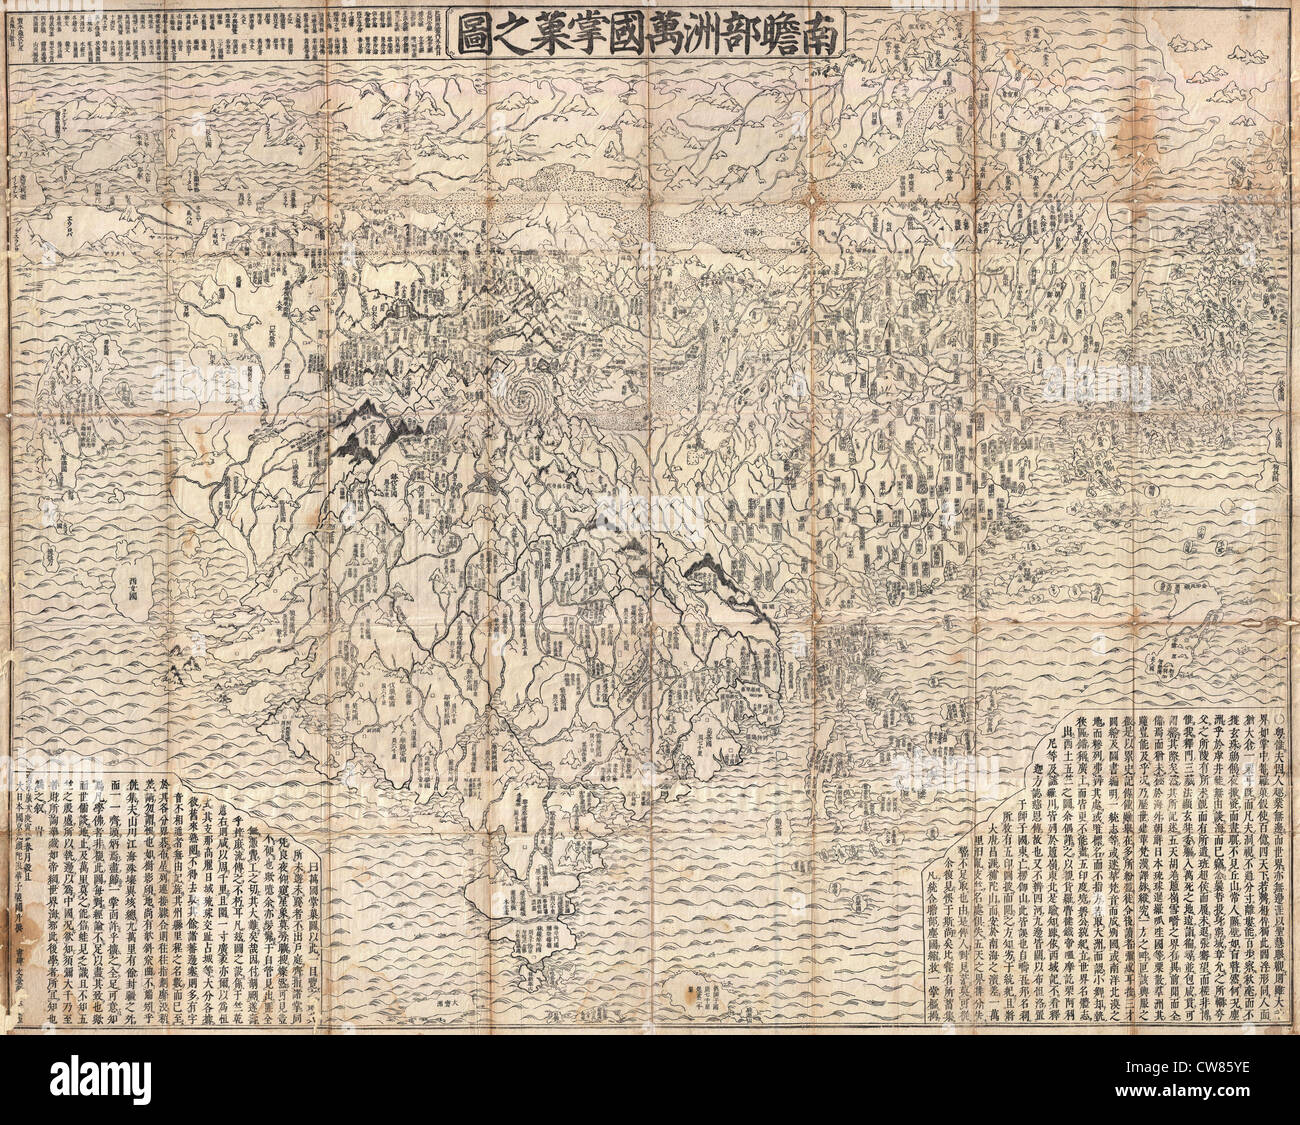 1710 Primer budista japonesa Mapa del mundo mostrando Europa, América y África. Foto de stock